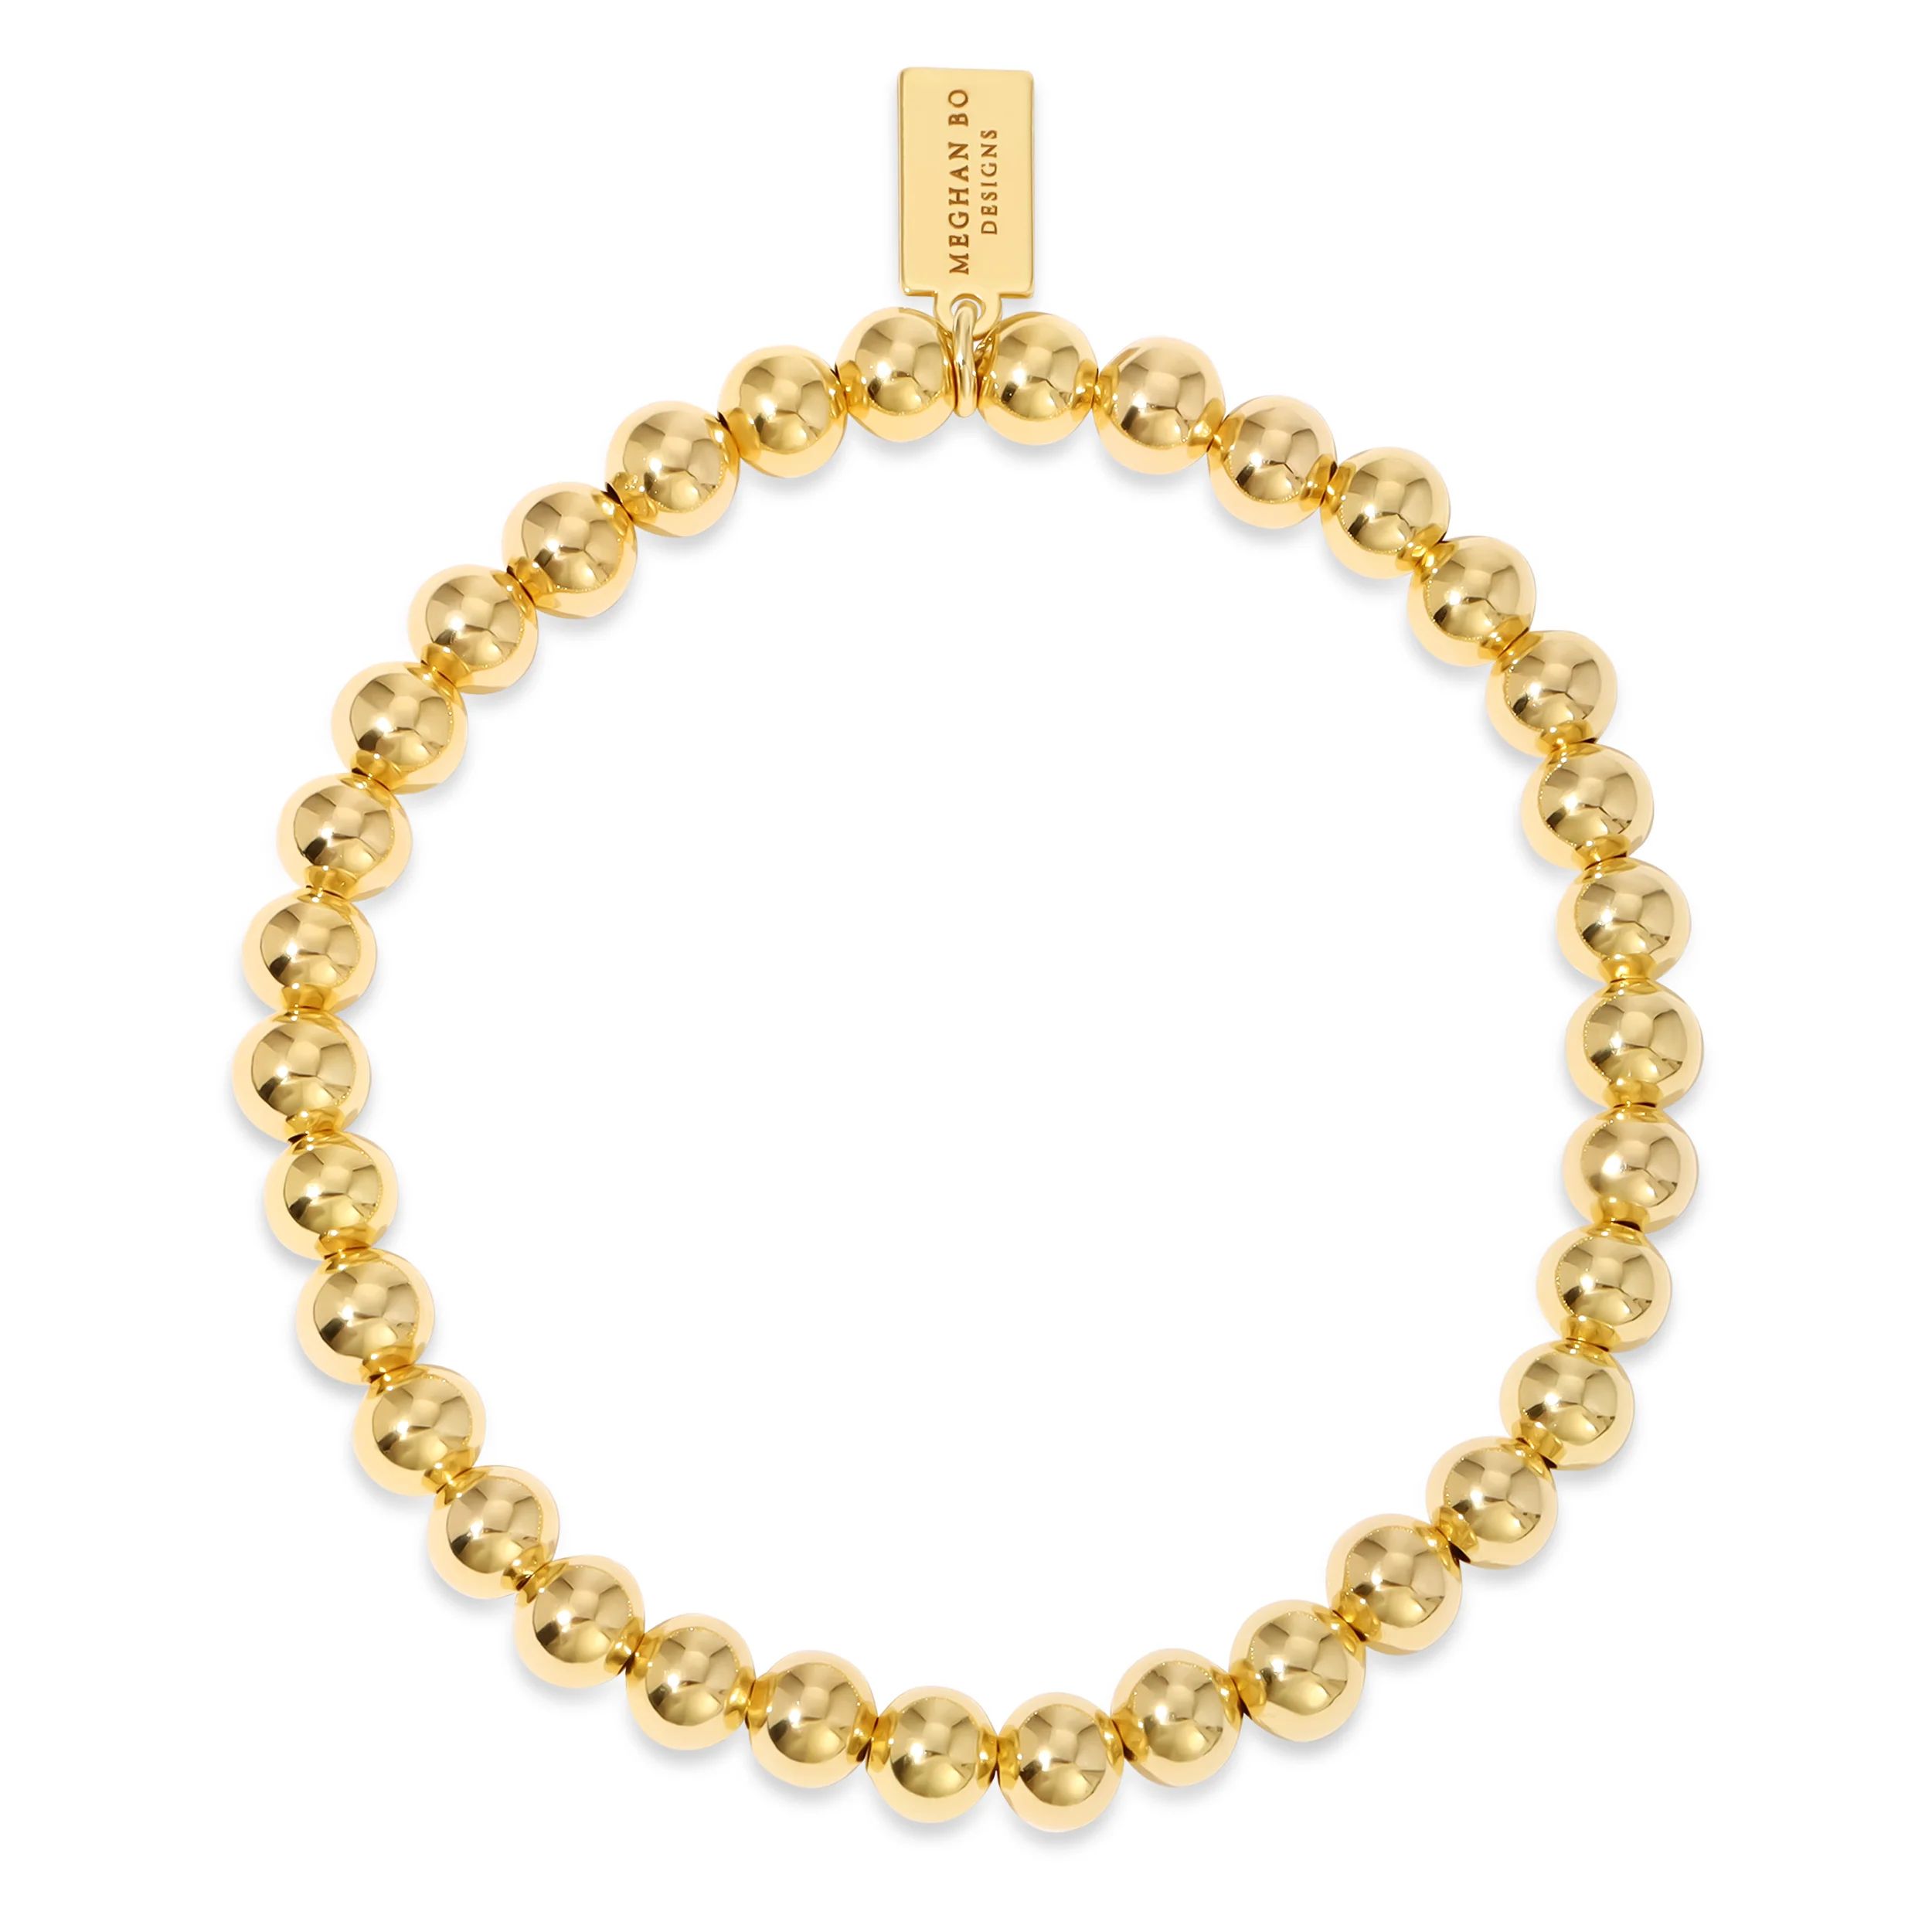 6MM Gold Fill Bracelet | Meghan Bo Designs